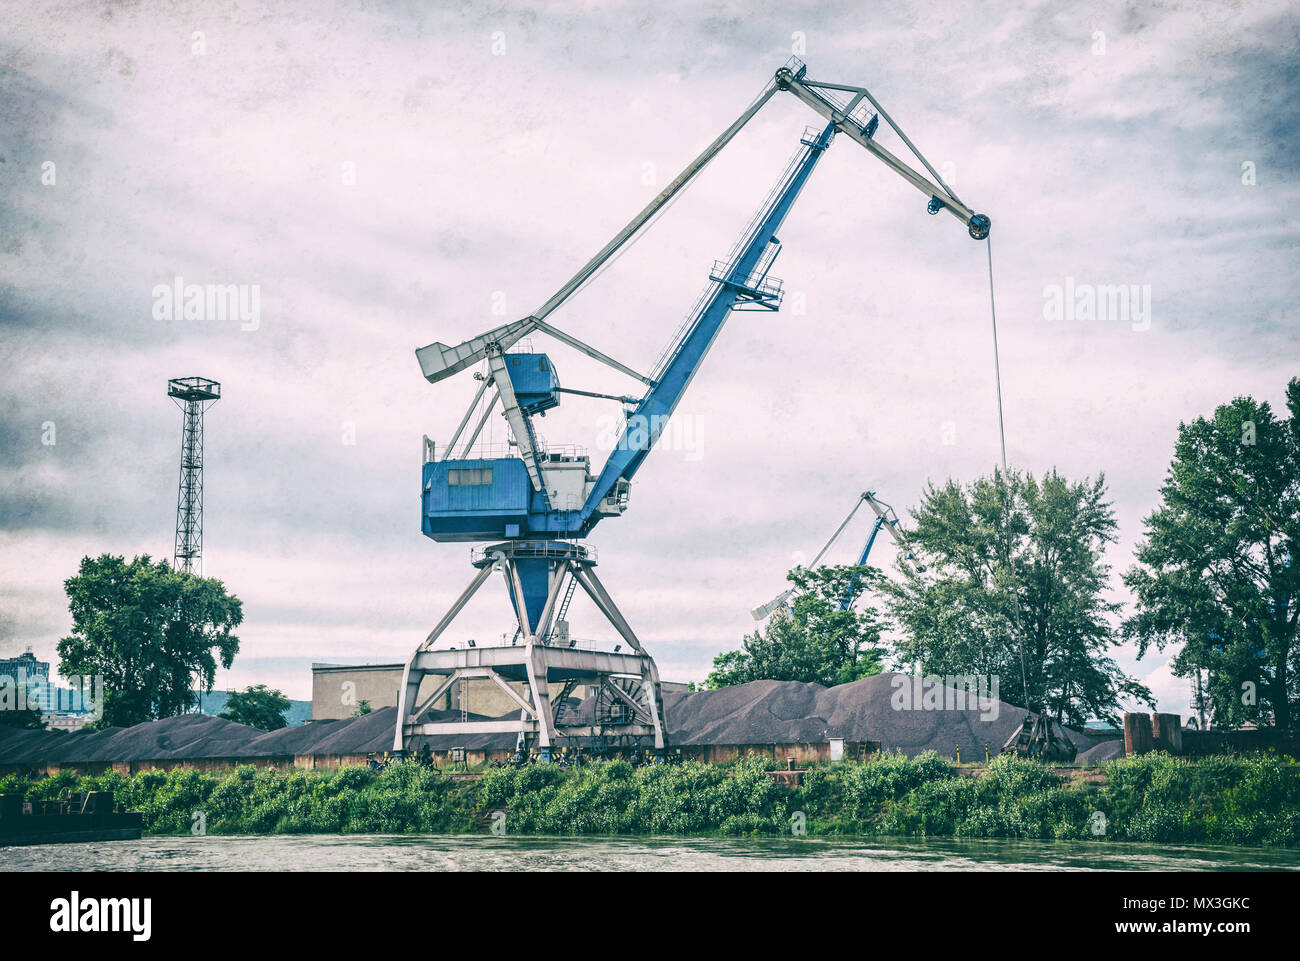 Blue Crane en el puerto de carga de traducir el carbón. Escena industrial. Filtro de fotografía analógica con arañazos. Foto de stock